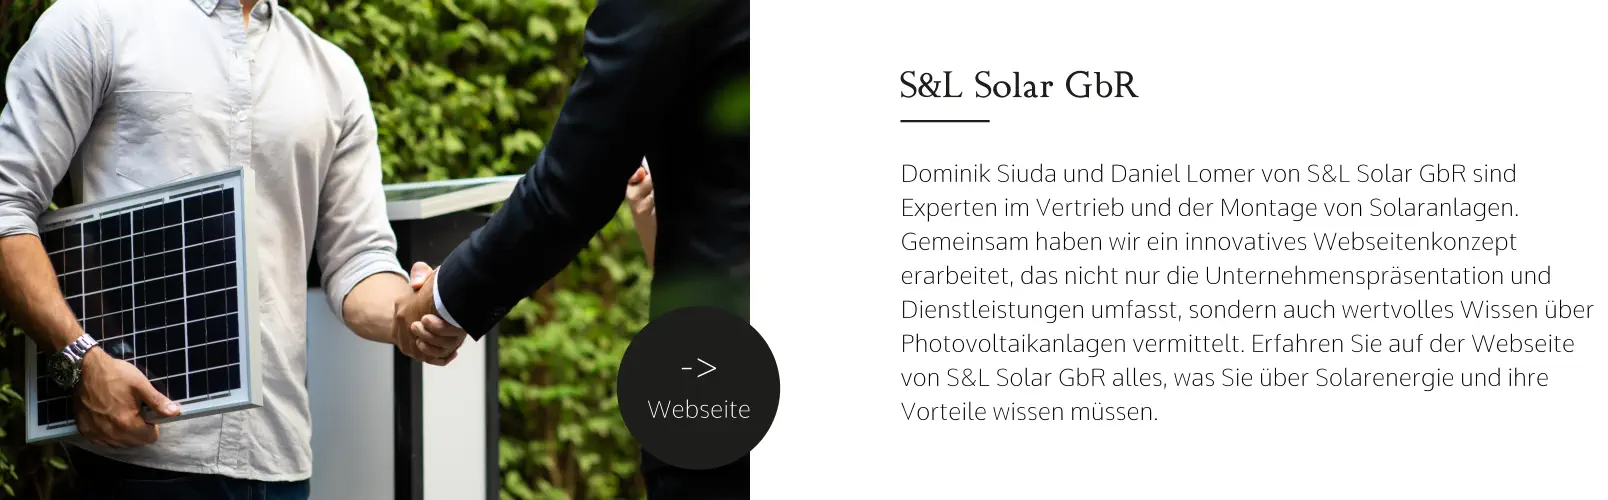 S&L Solar GbR Dominik Siuda und Daniel Lomer von S&L Solar GbR sind Experten im Vertrieb und der Montage von Solaranlagen. Gemeinsam haben wir ein innovatives Webseitenkonzept erarbeitet, das nicht nur die Unternehmenspräsentation und Dienstleistungen umfasst, sondern auch wertvolles Wissen über Photovoltaikanlagen vermittelt. Erfahren Sie auf der Webseite von S&L Solar GbR alles, was Sie über Solarenergie und ihre Vorteile wissen müssen. -> Webseite